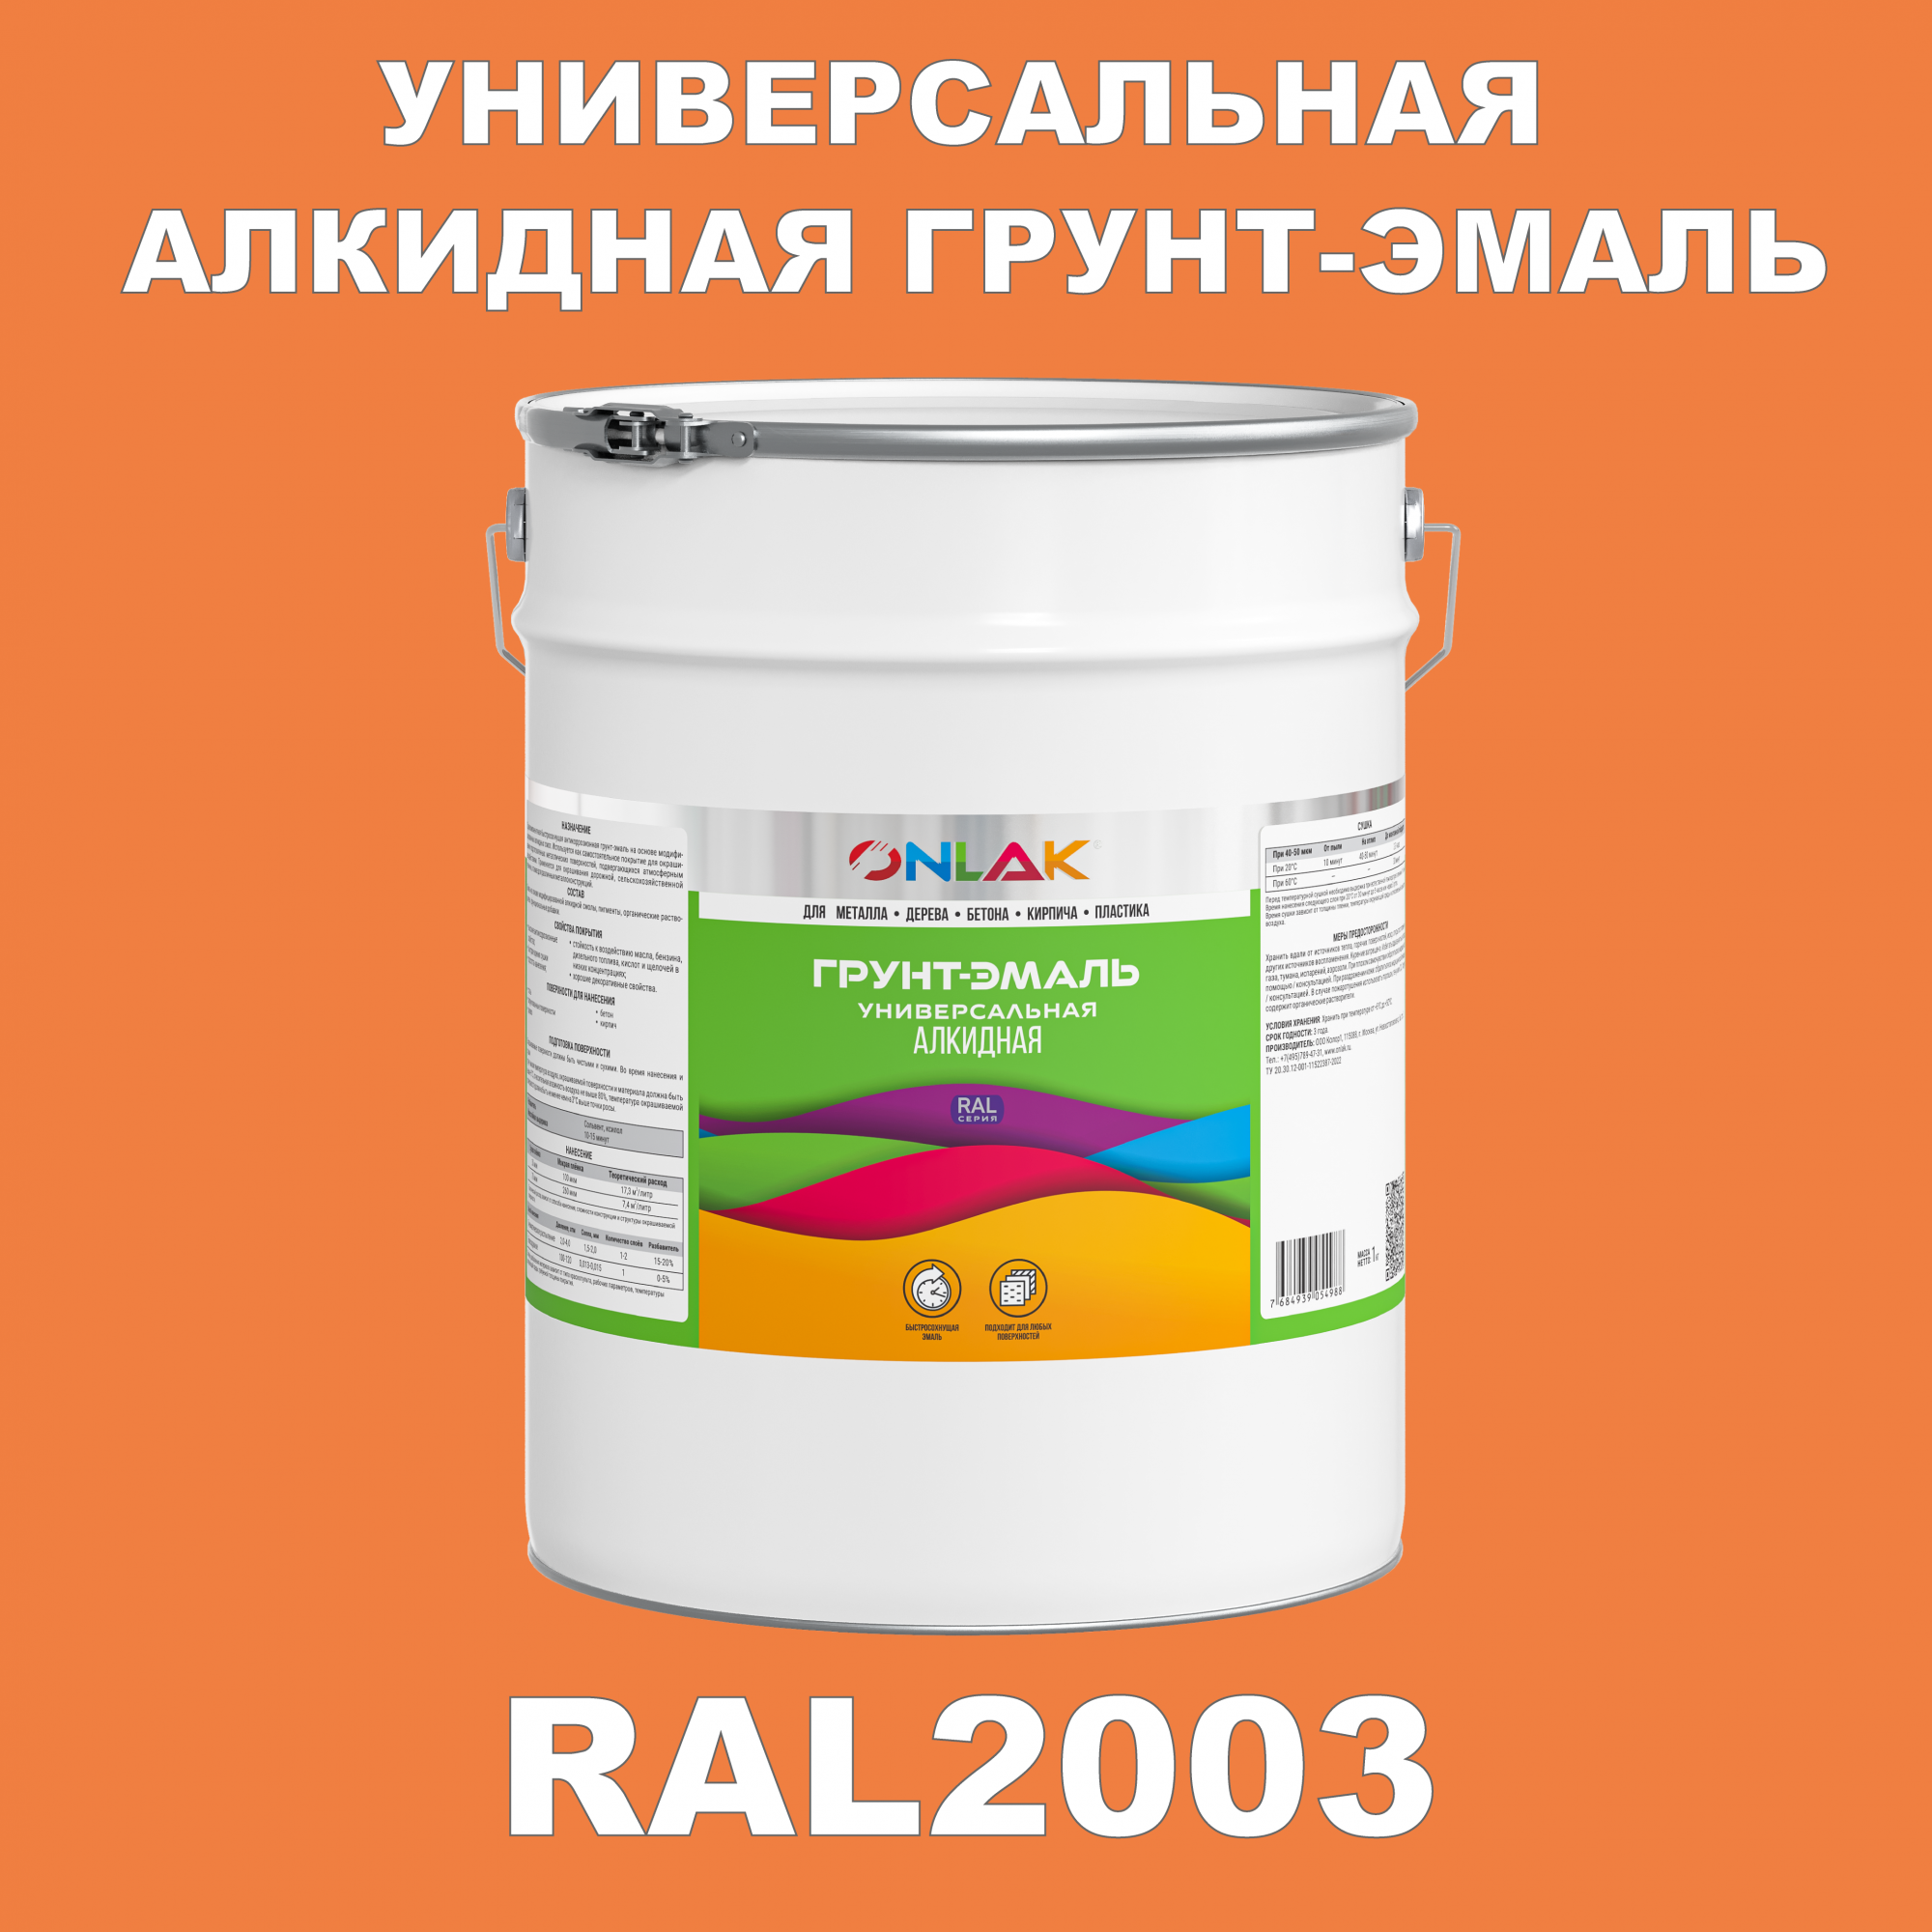 Грунт-эмаль ONLAK 1К RAL2003 антикоррозионная алкидная по металлу по ржавчине 20 кг грунт эмаль yollo по ржавчине алкидная серая 0 9 кг